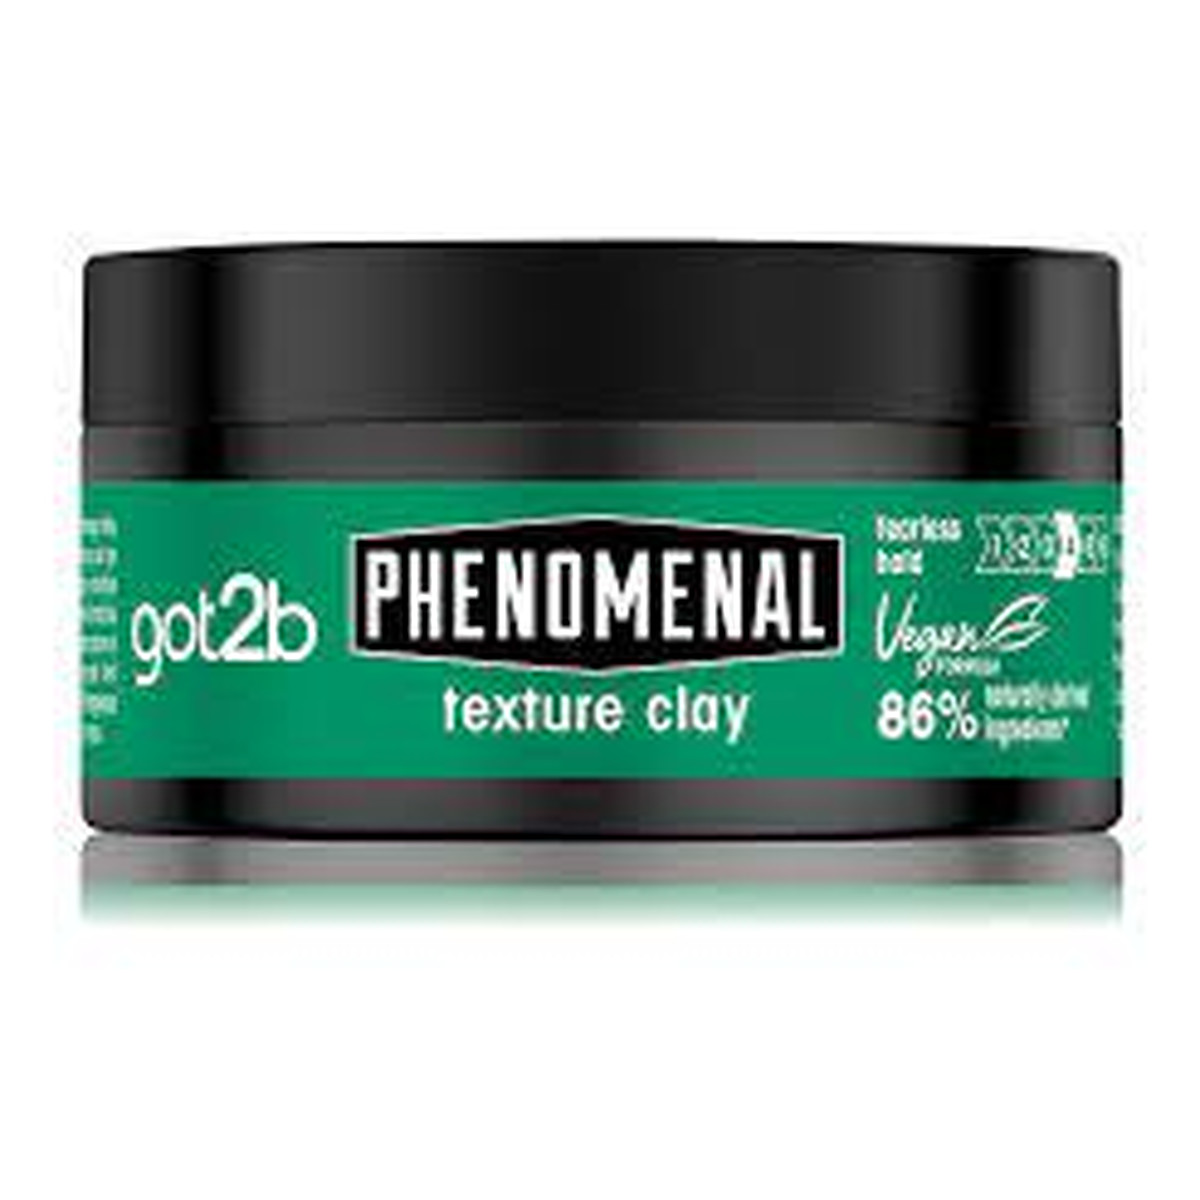 got2b Phenomenal pasta do układania włosów Texturizing Clay 100ml